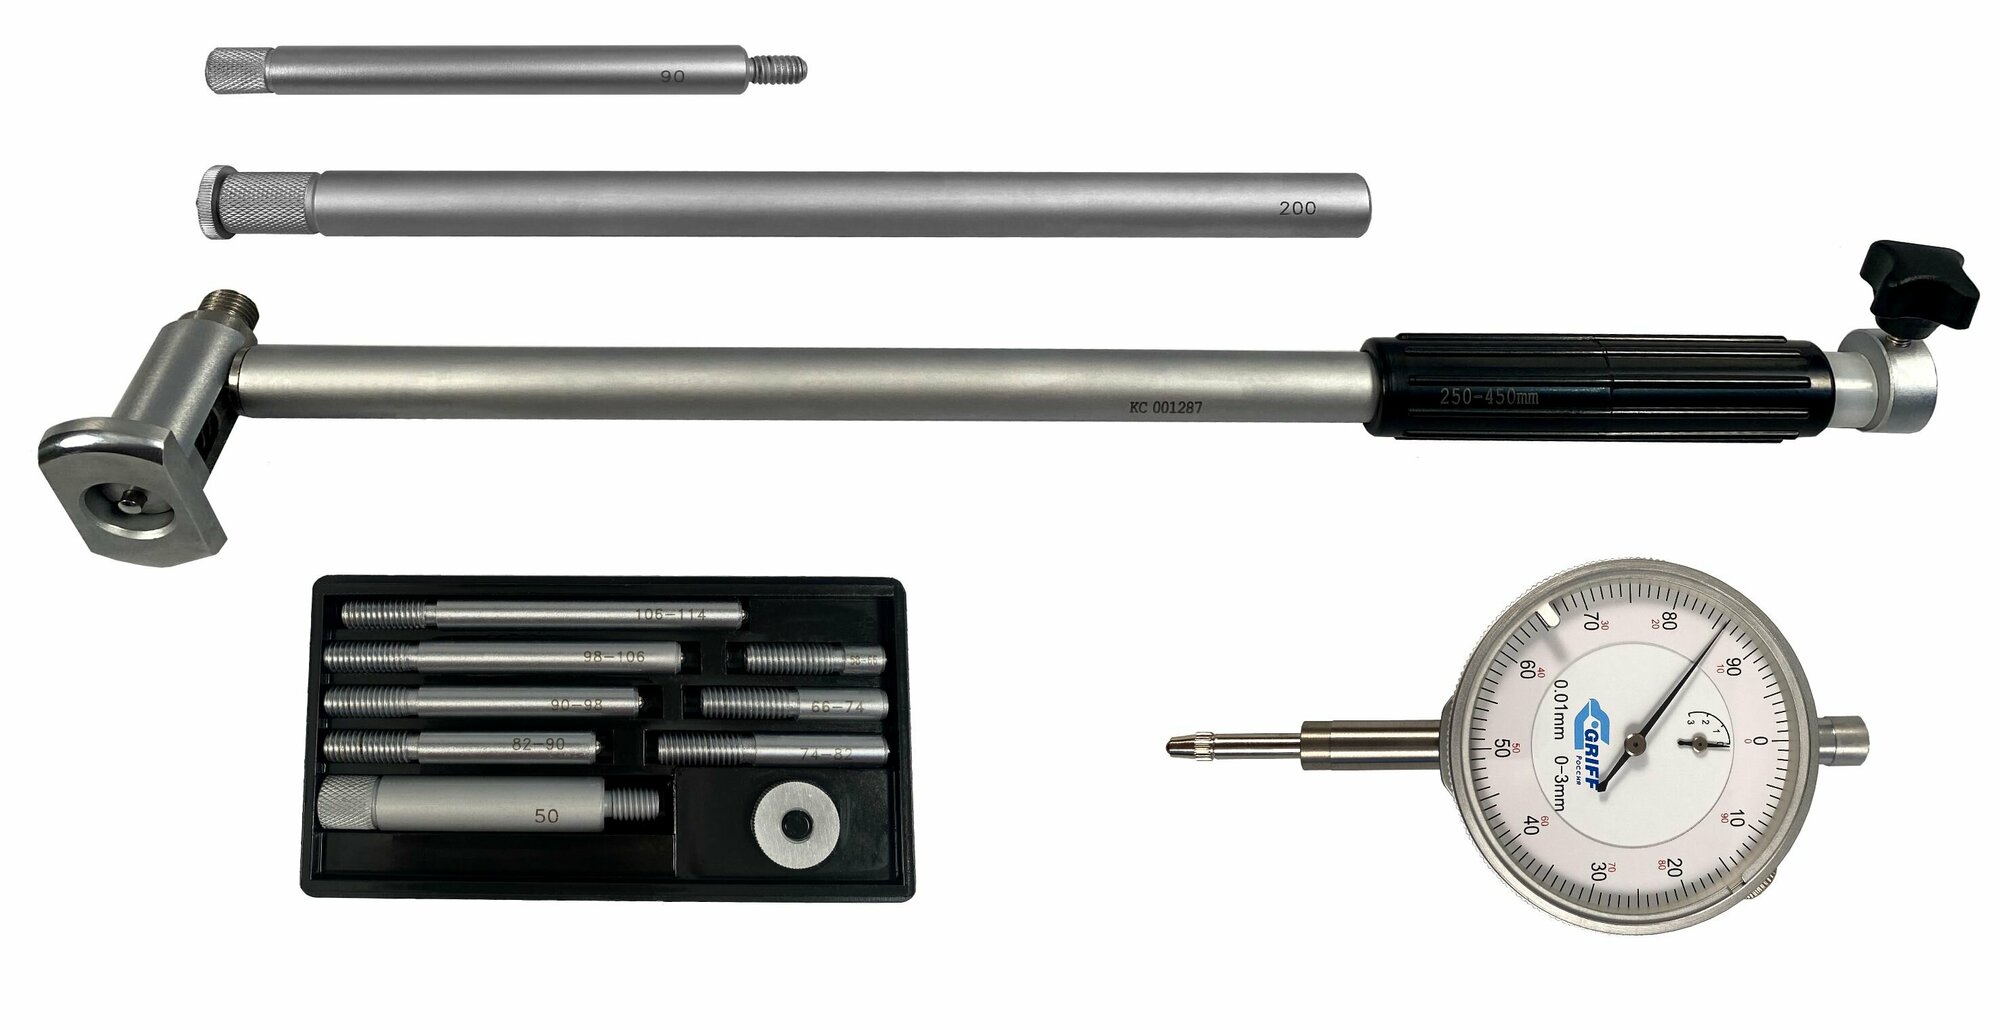 Нутромер индикаторный НИ 250-450, GRIFF, ГОСТ 868-82, серия professional, D128031